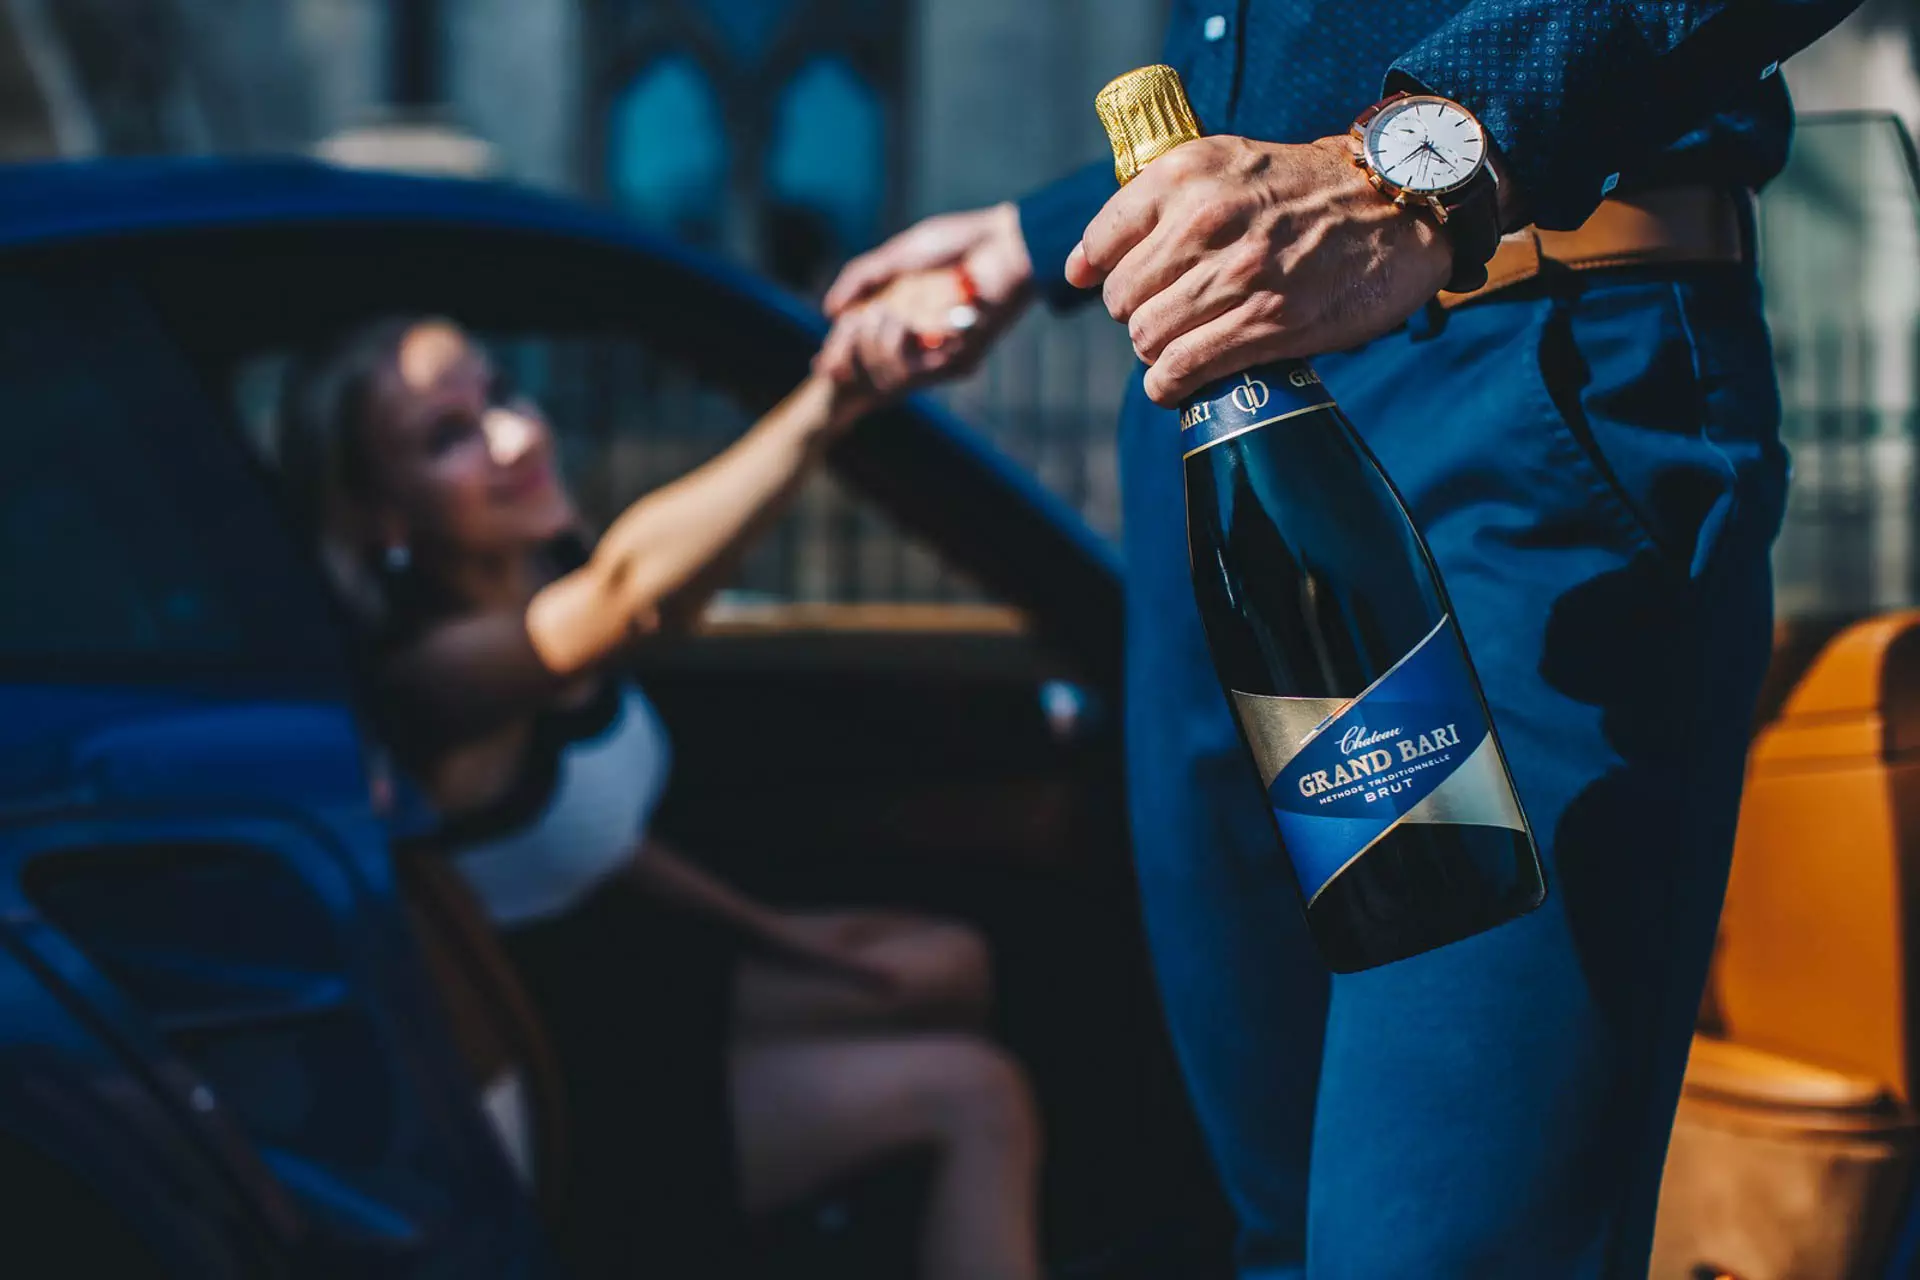 Fotenie pre marketingovú kampaň vína Grand bari na rande